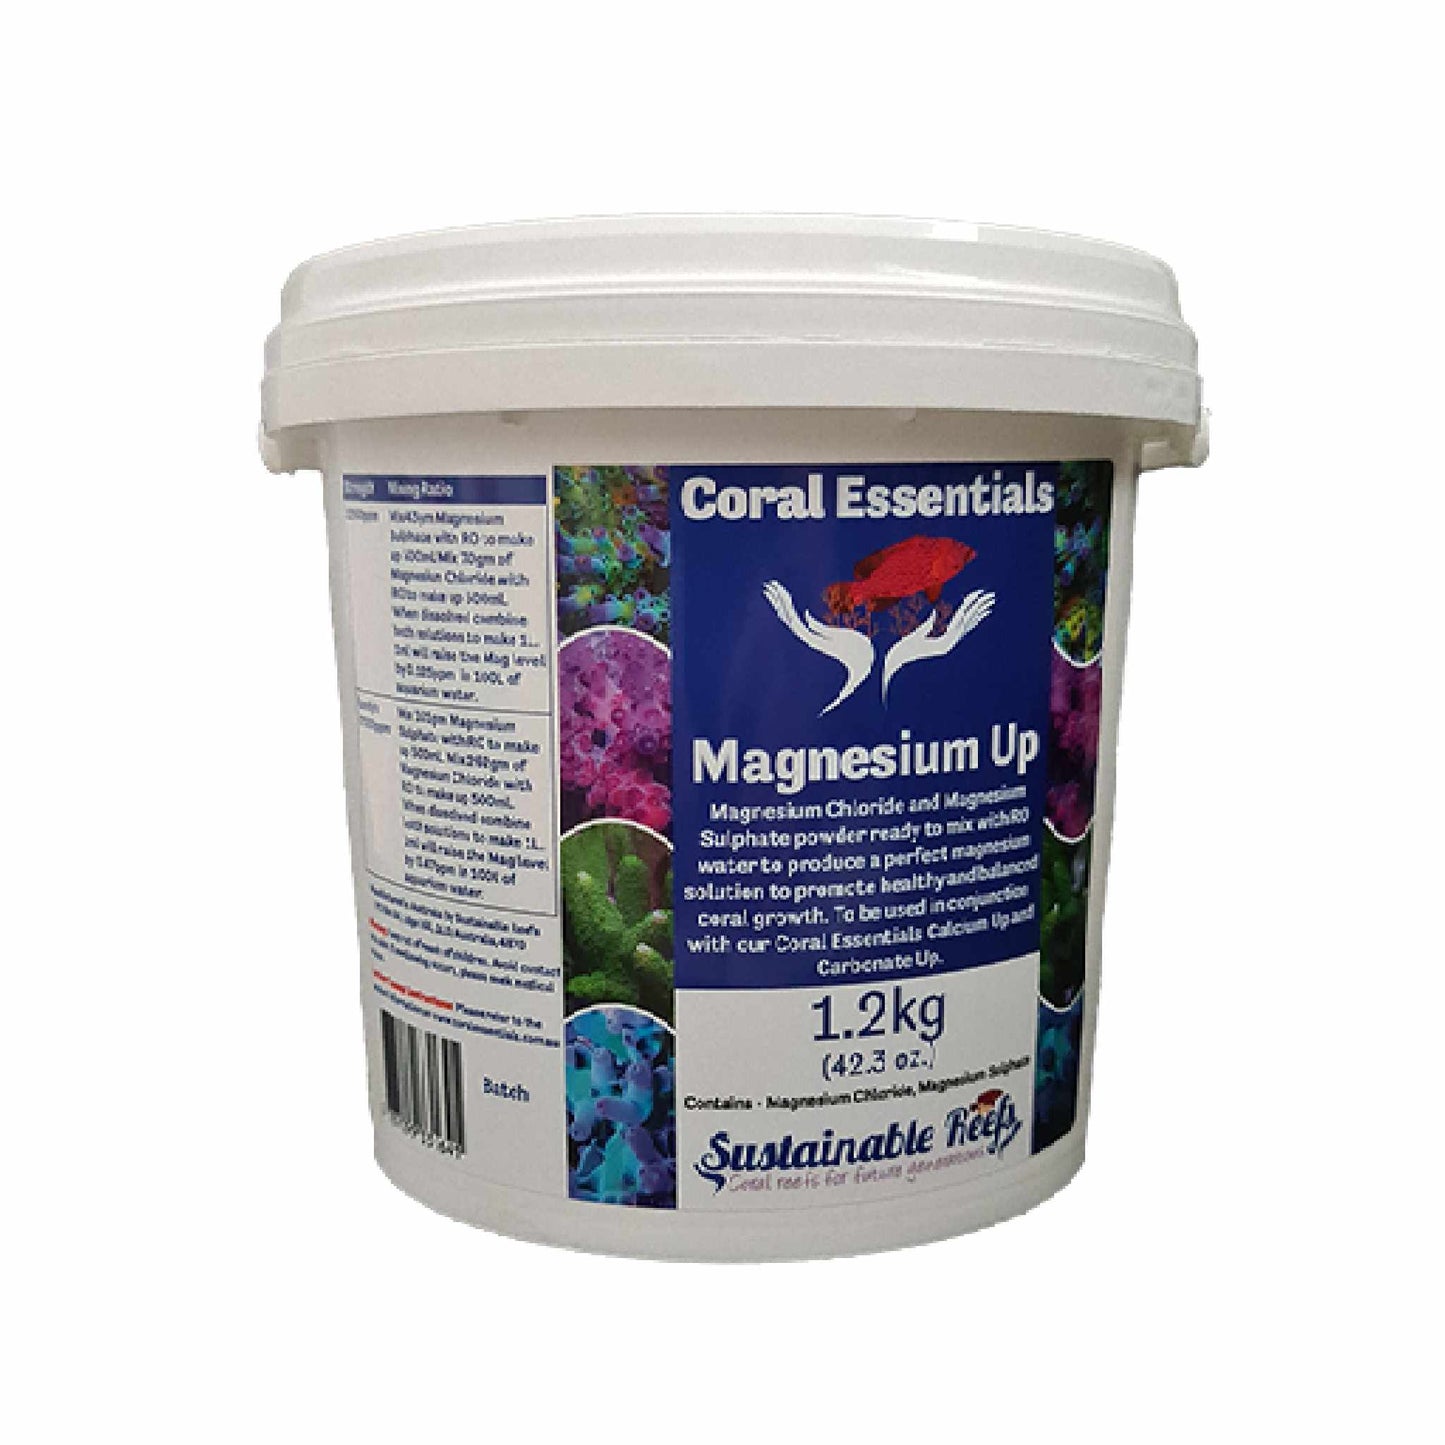 Magnesium Up Powder 1.2kg - Coral Essentials